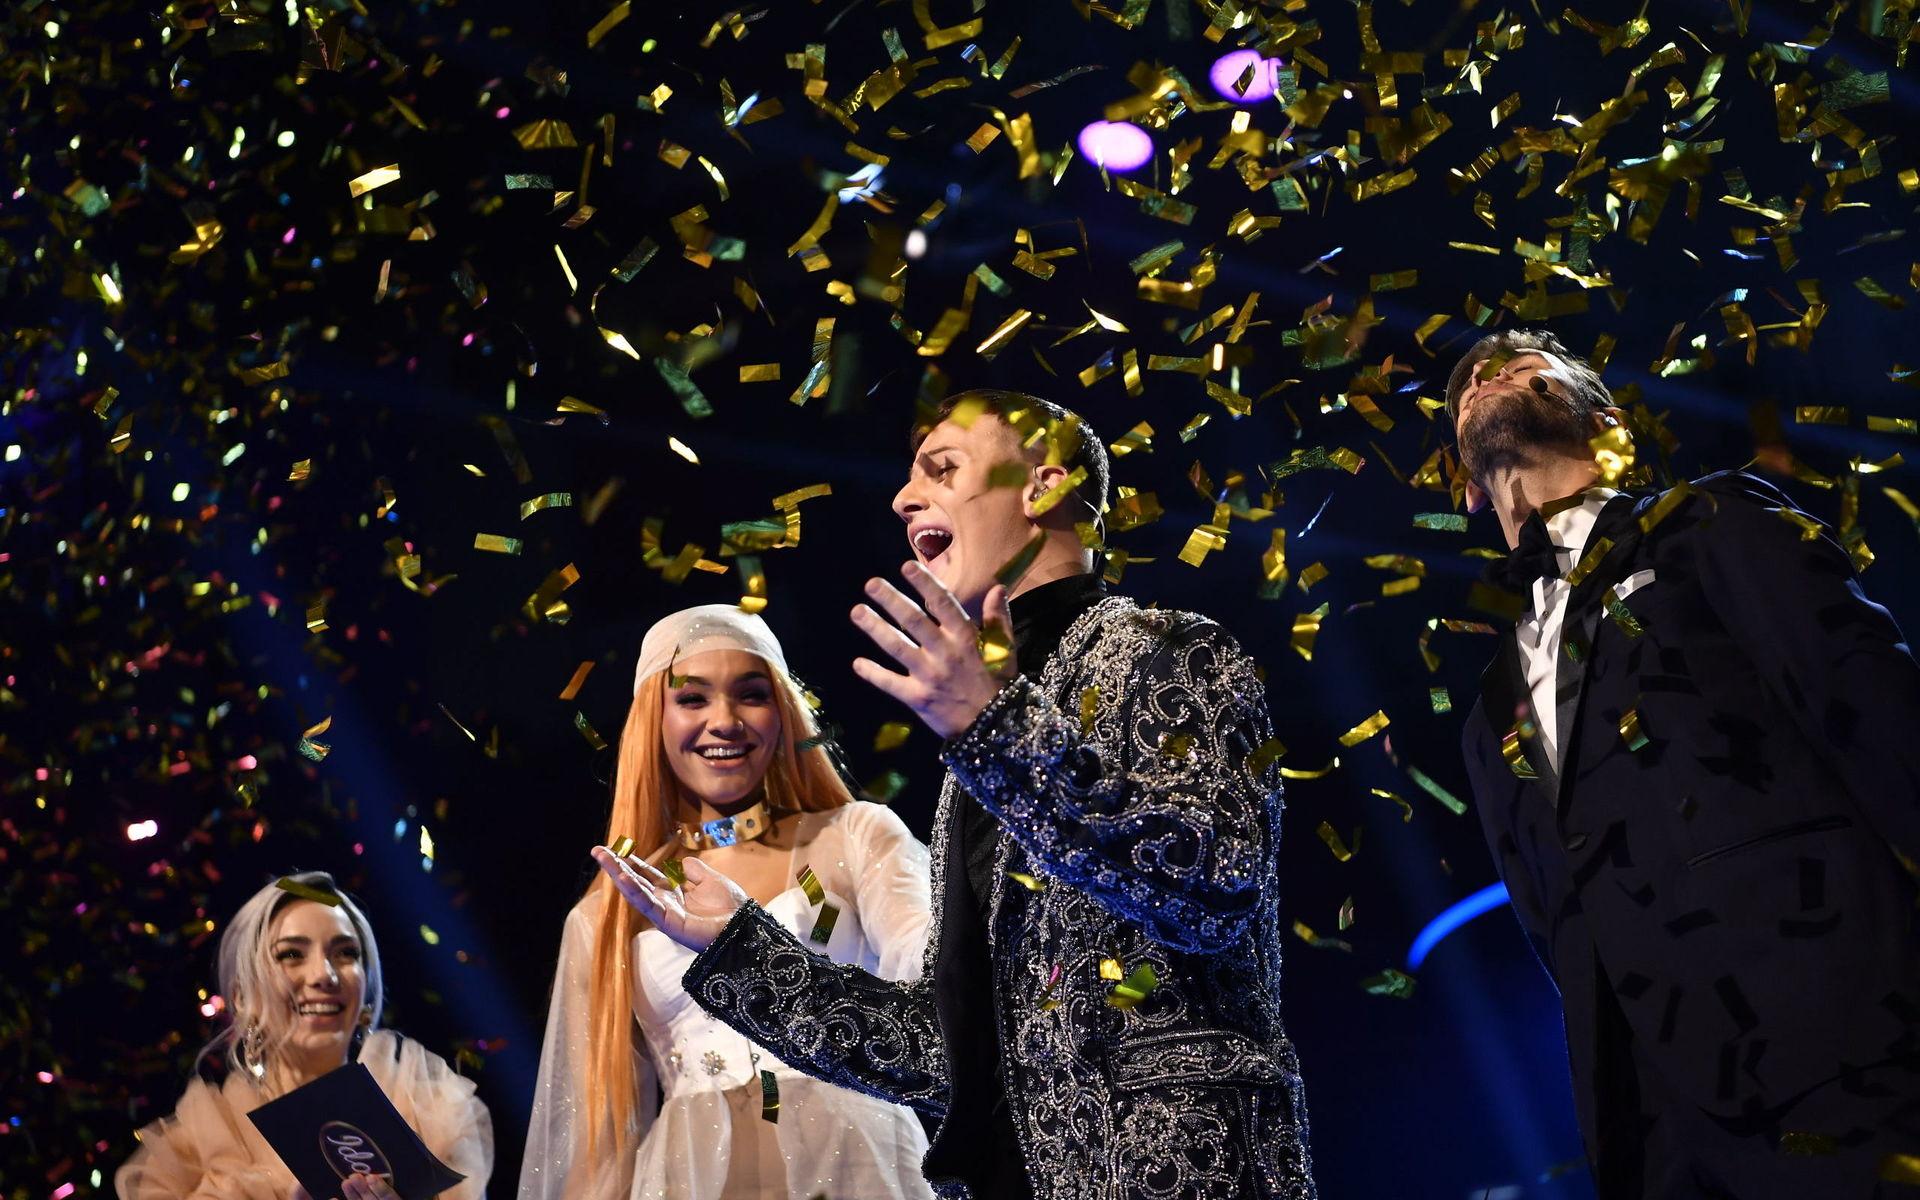 Sebastian Walldén när han fick beskedet att han vunnit TV4:s program Idol 2018 i Globen.